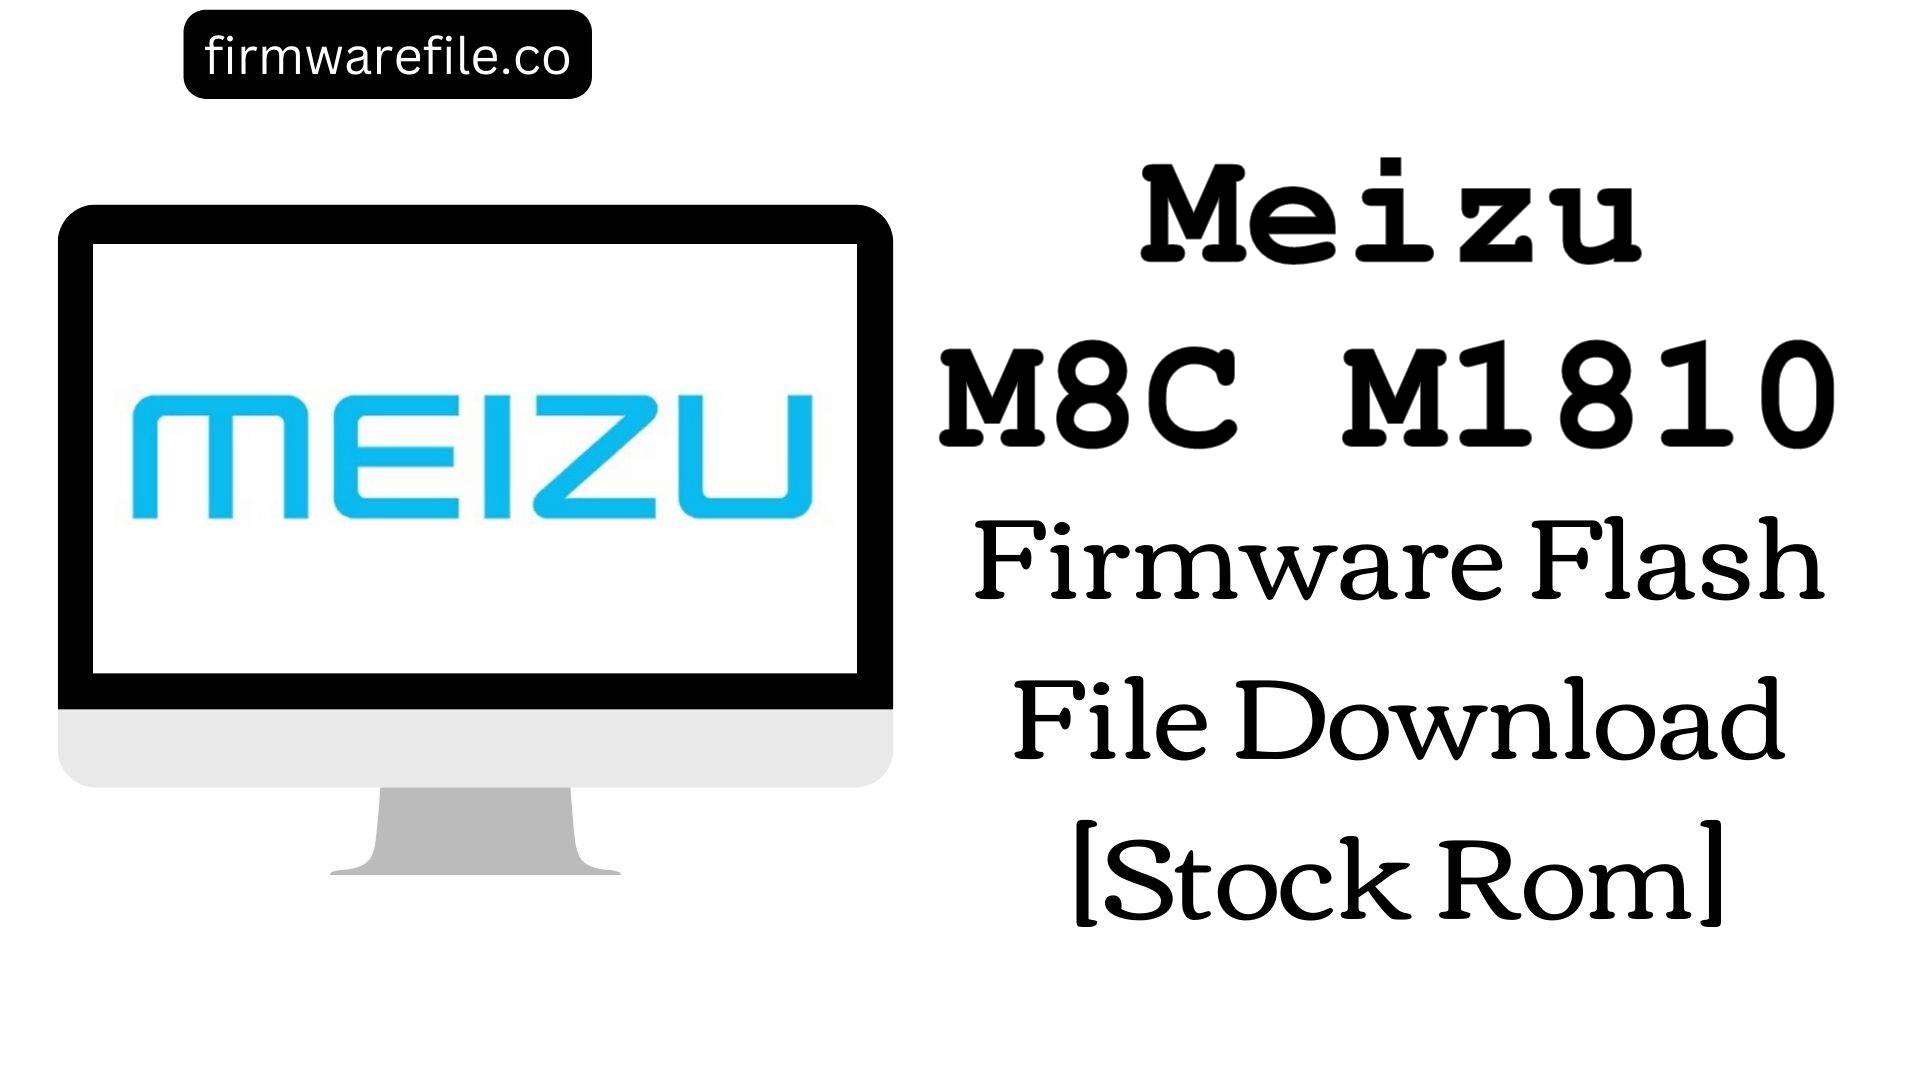 Meizu M8C M1810